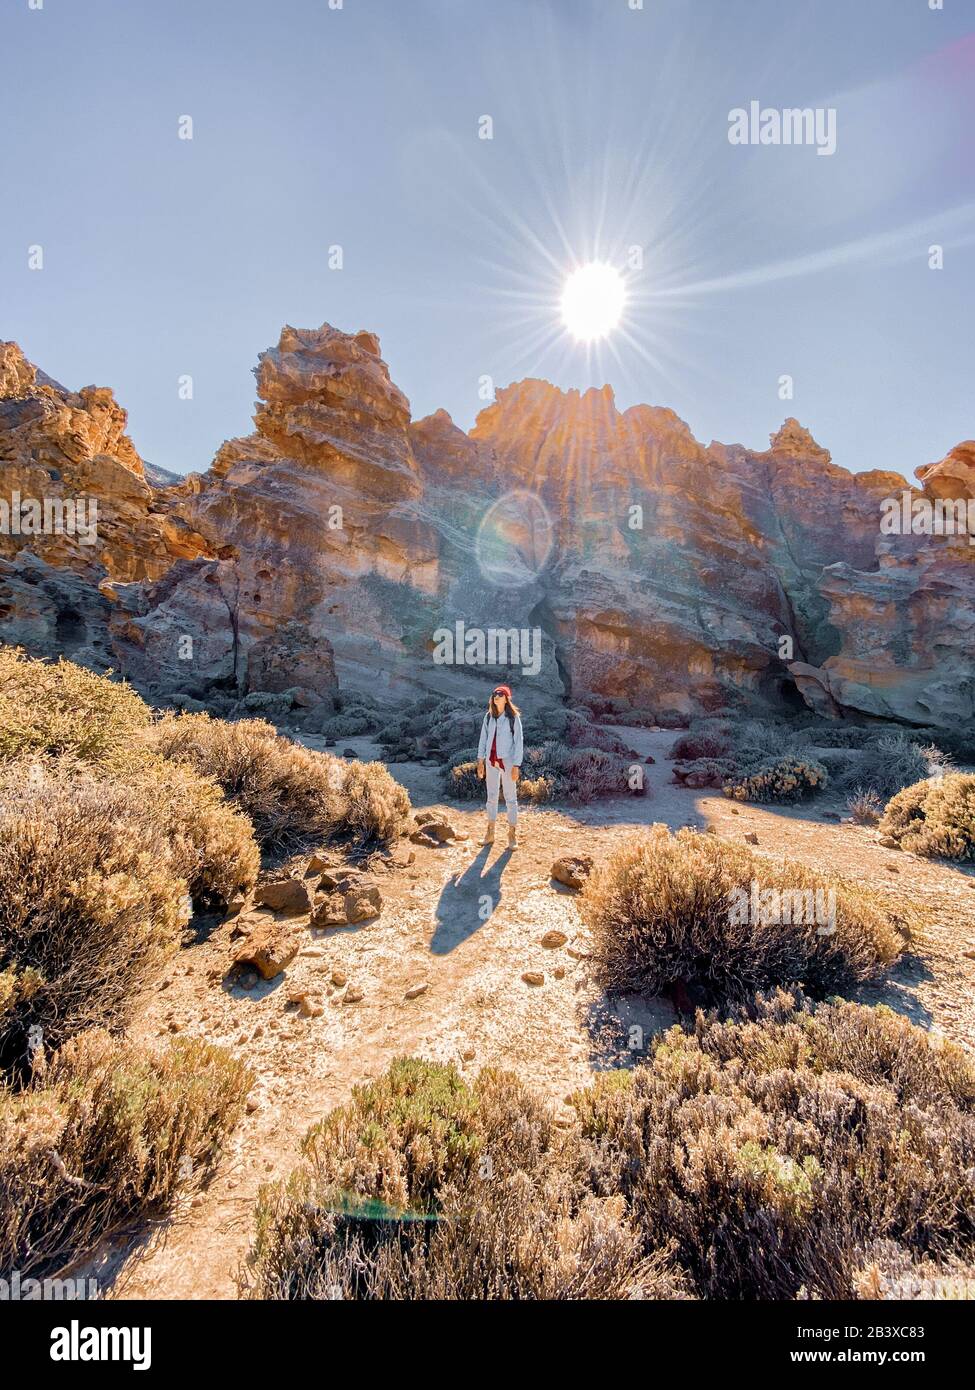 Paesaggio di una bella roccia sulla valle del deserto con donna in viaggio. Immagine realizzata sul telefono cellulare Foto Stock